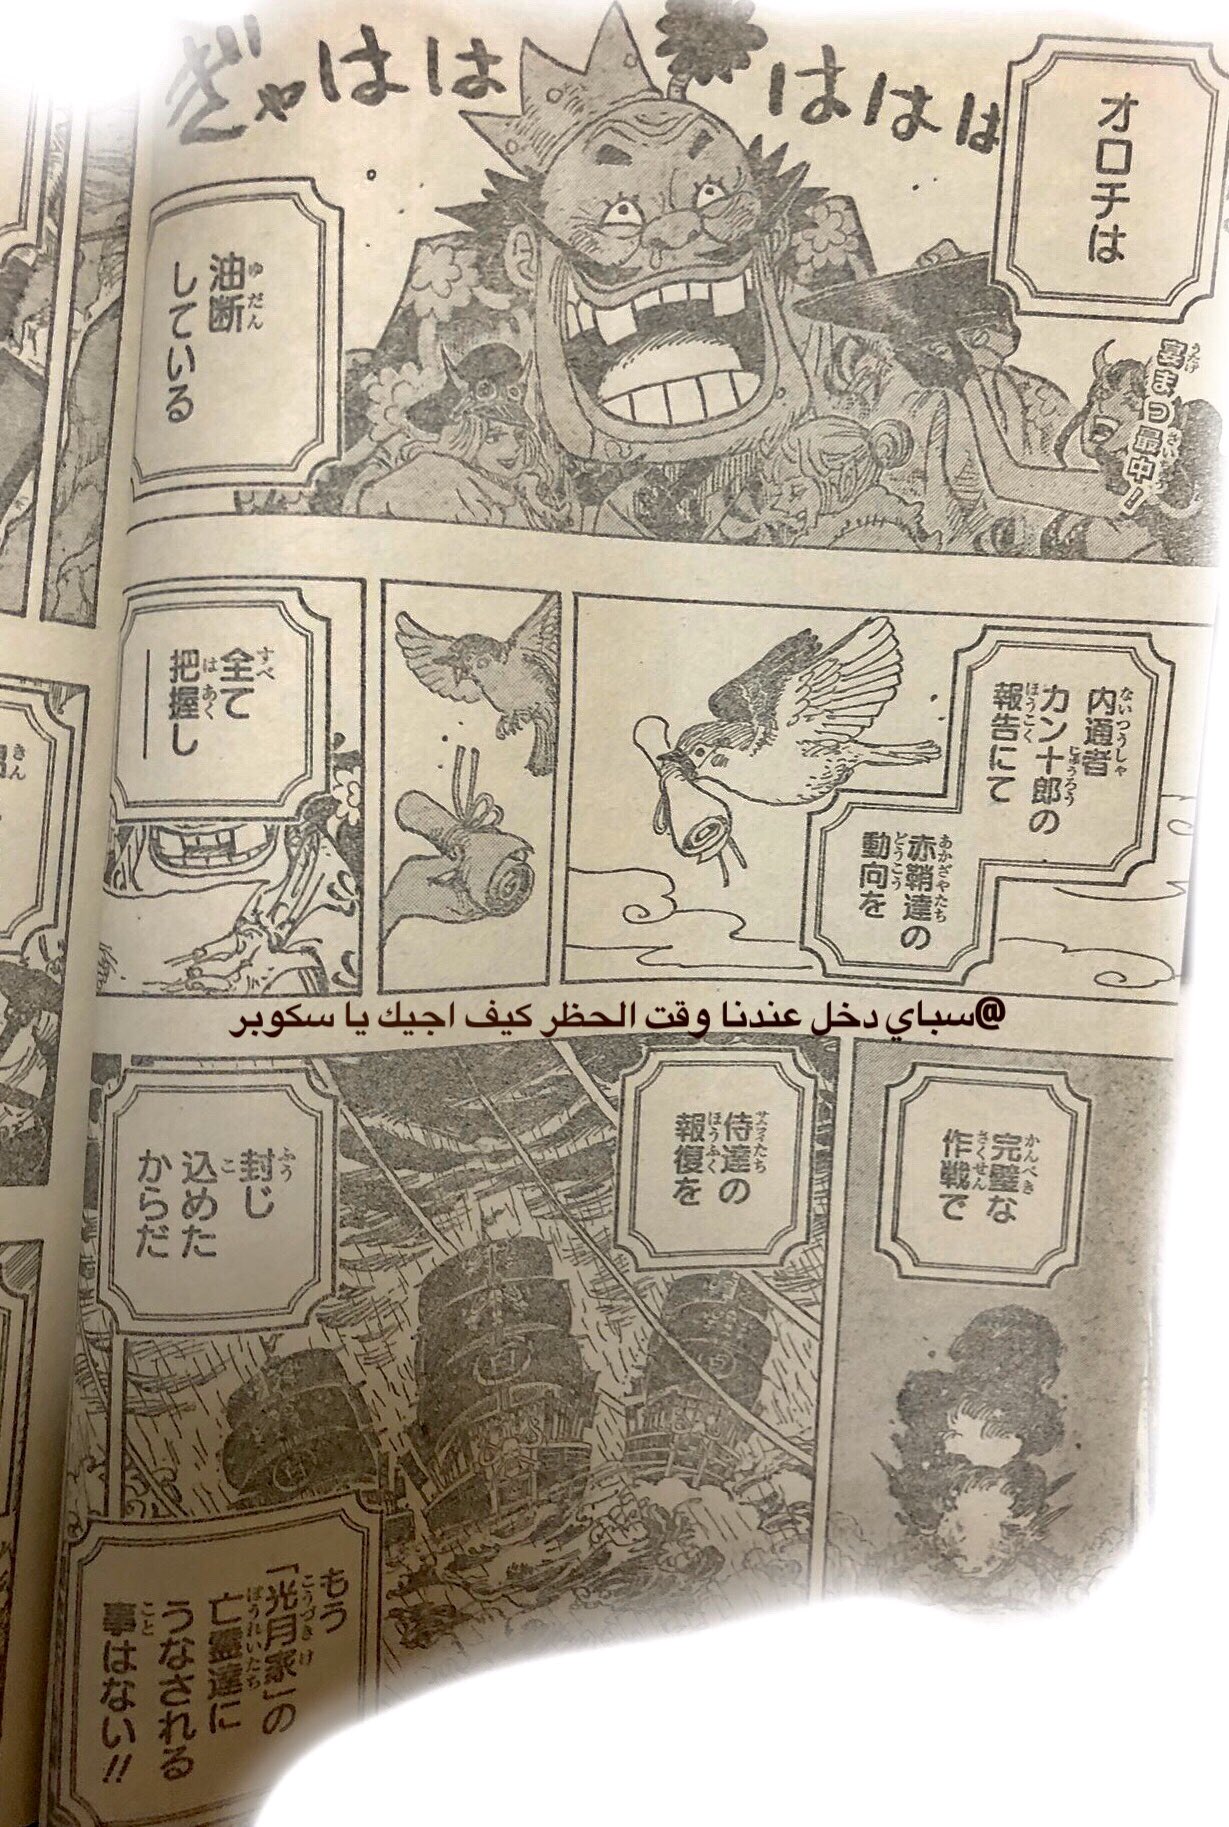 Spoilers 979 Problema Familiar Pagina 42 Foro De One Piece Pirateking